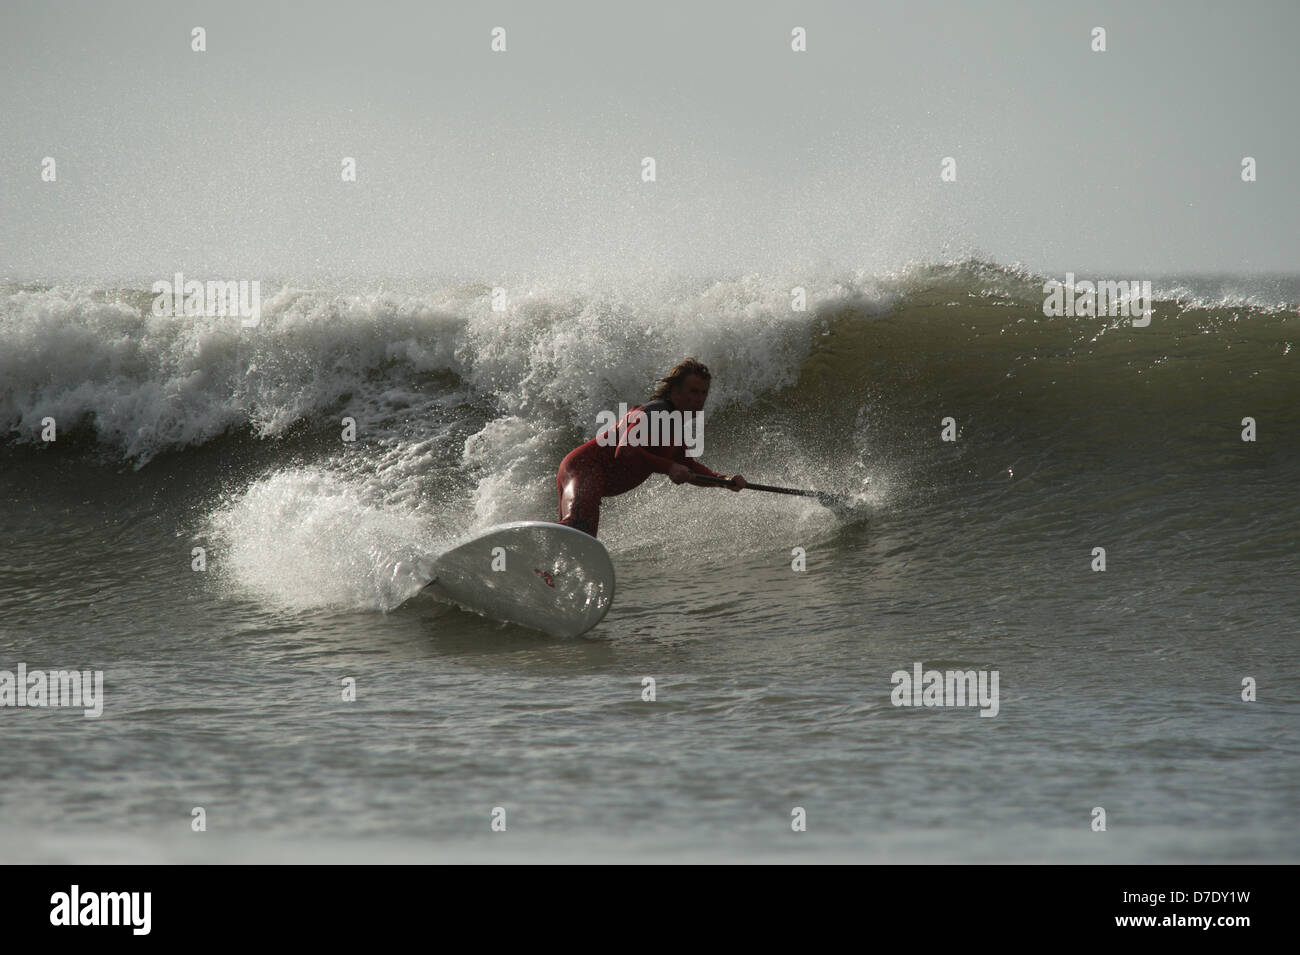 Stand Up Paddle board surfer Chris Griffiths, Champion britannique montre la voie classique de l'autre côté de la vague des surfeurs. Séquence. Banque D'Images